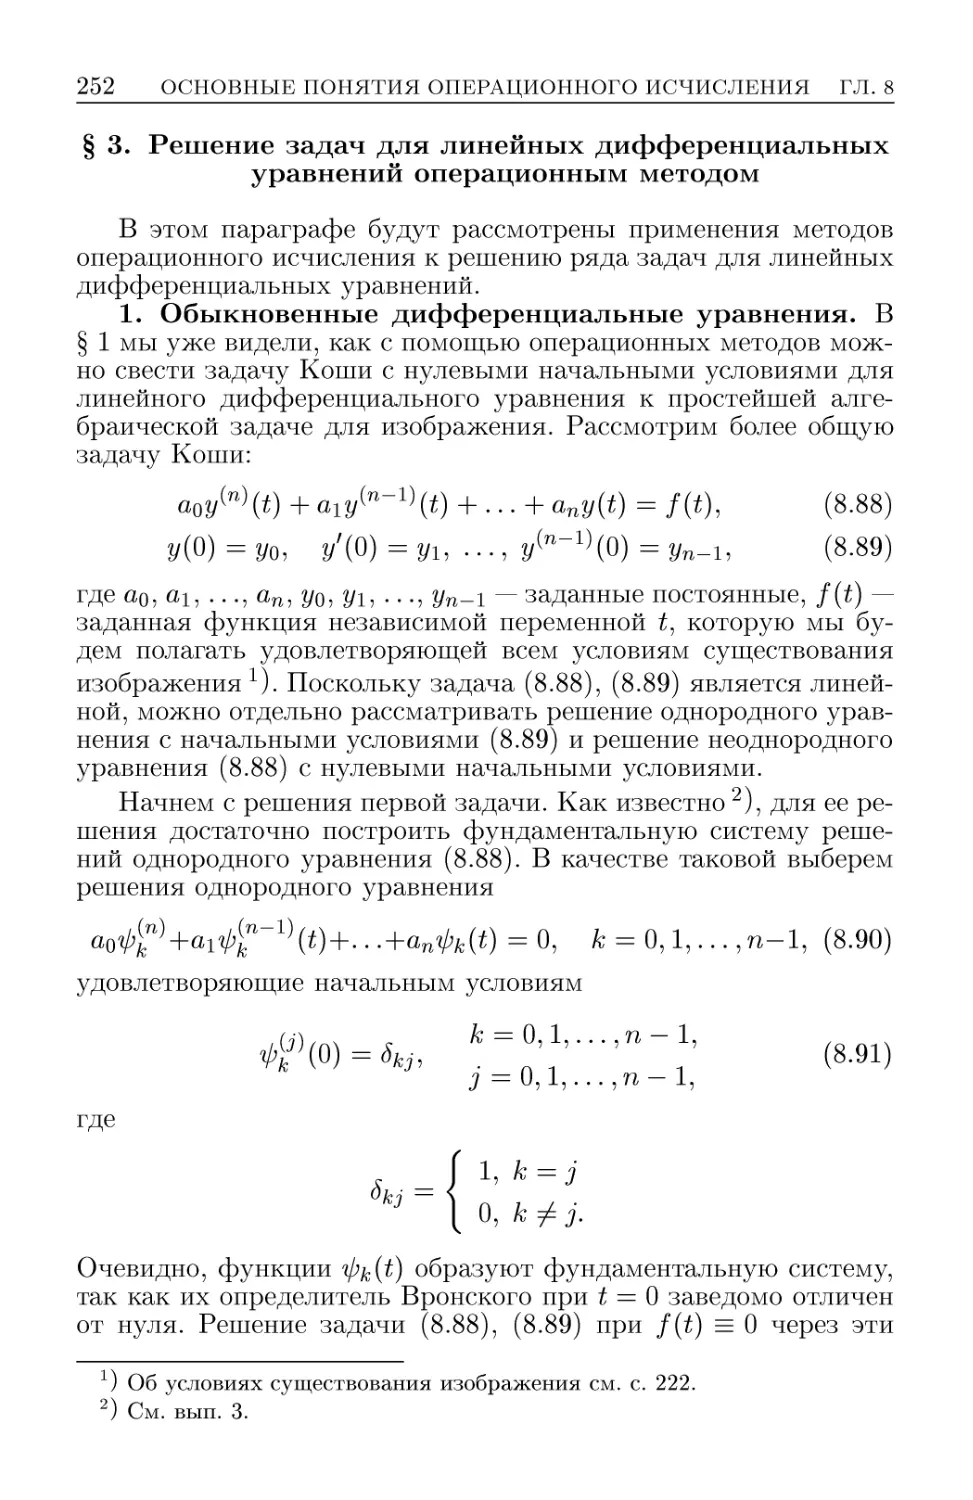 § 3. Решение задач для линейных дифференциальных уравнений операционным методом